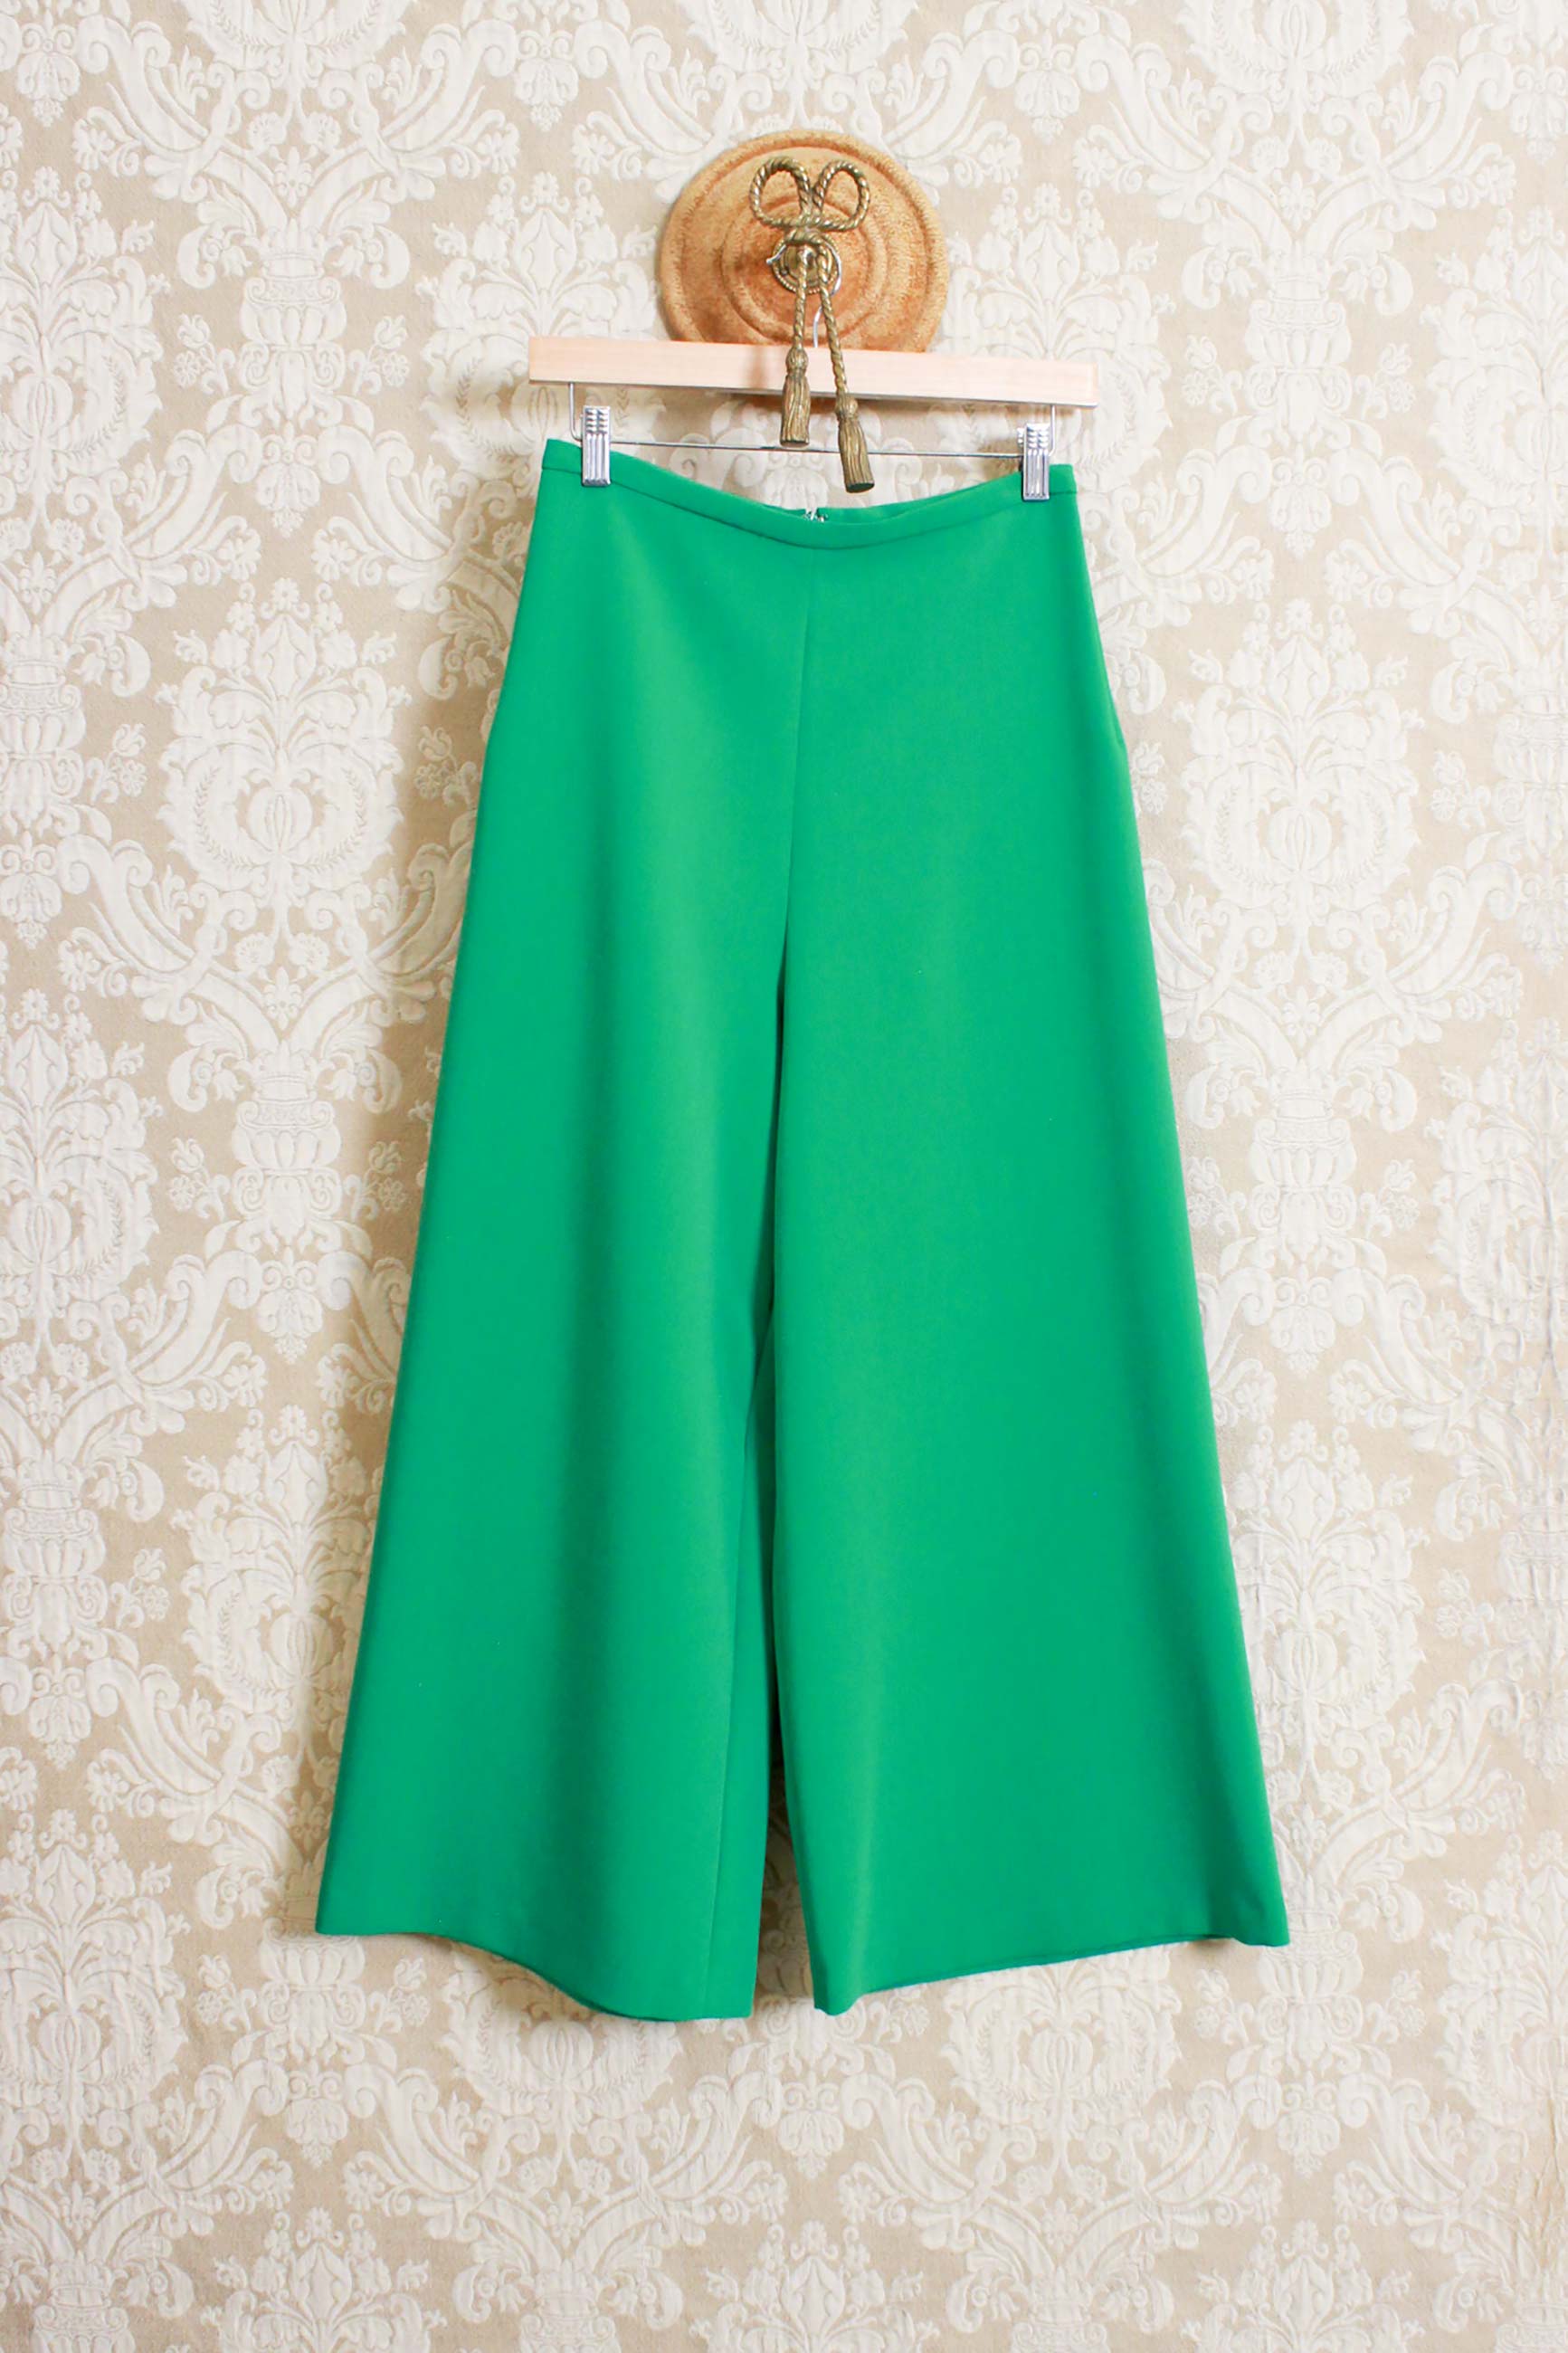 Pantalone cropped in tessuto techno wool della maison niù color verde muna smerald